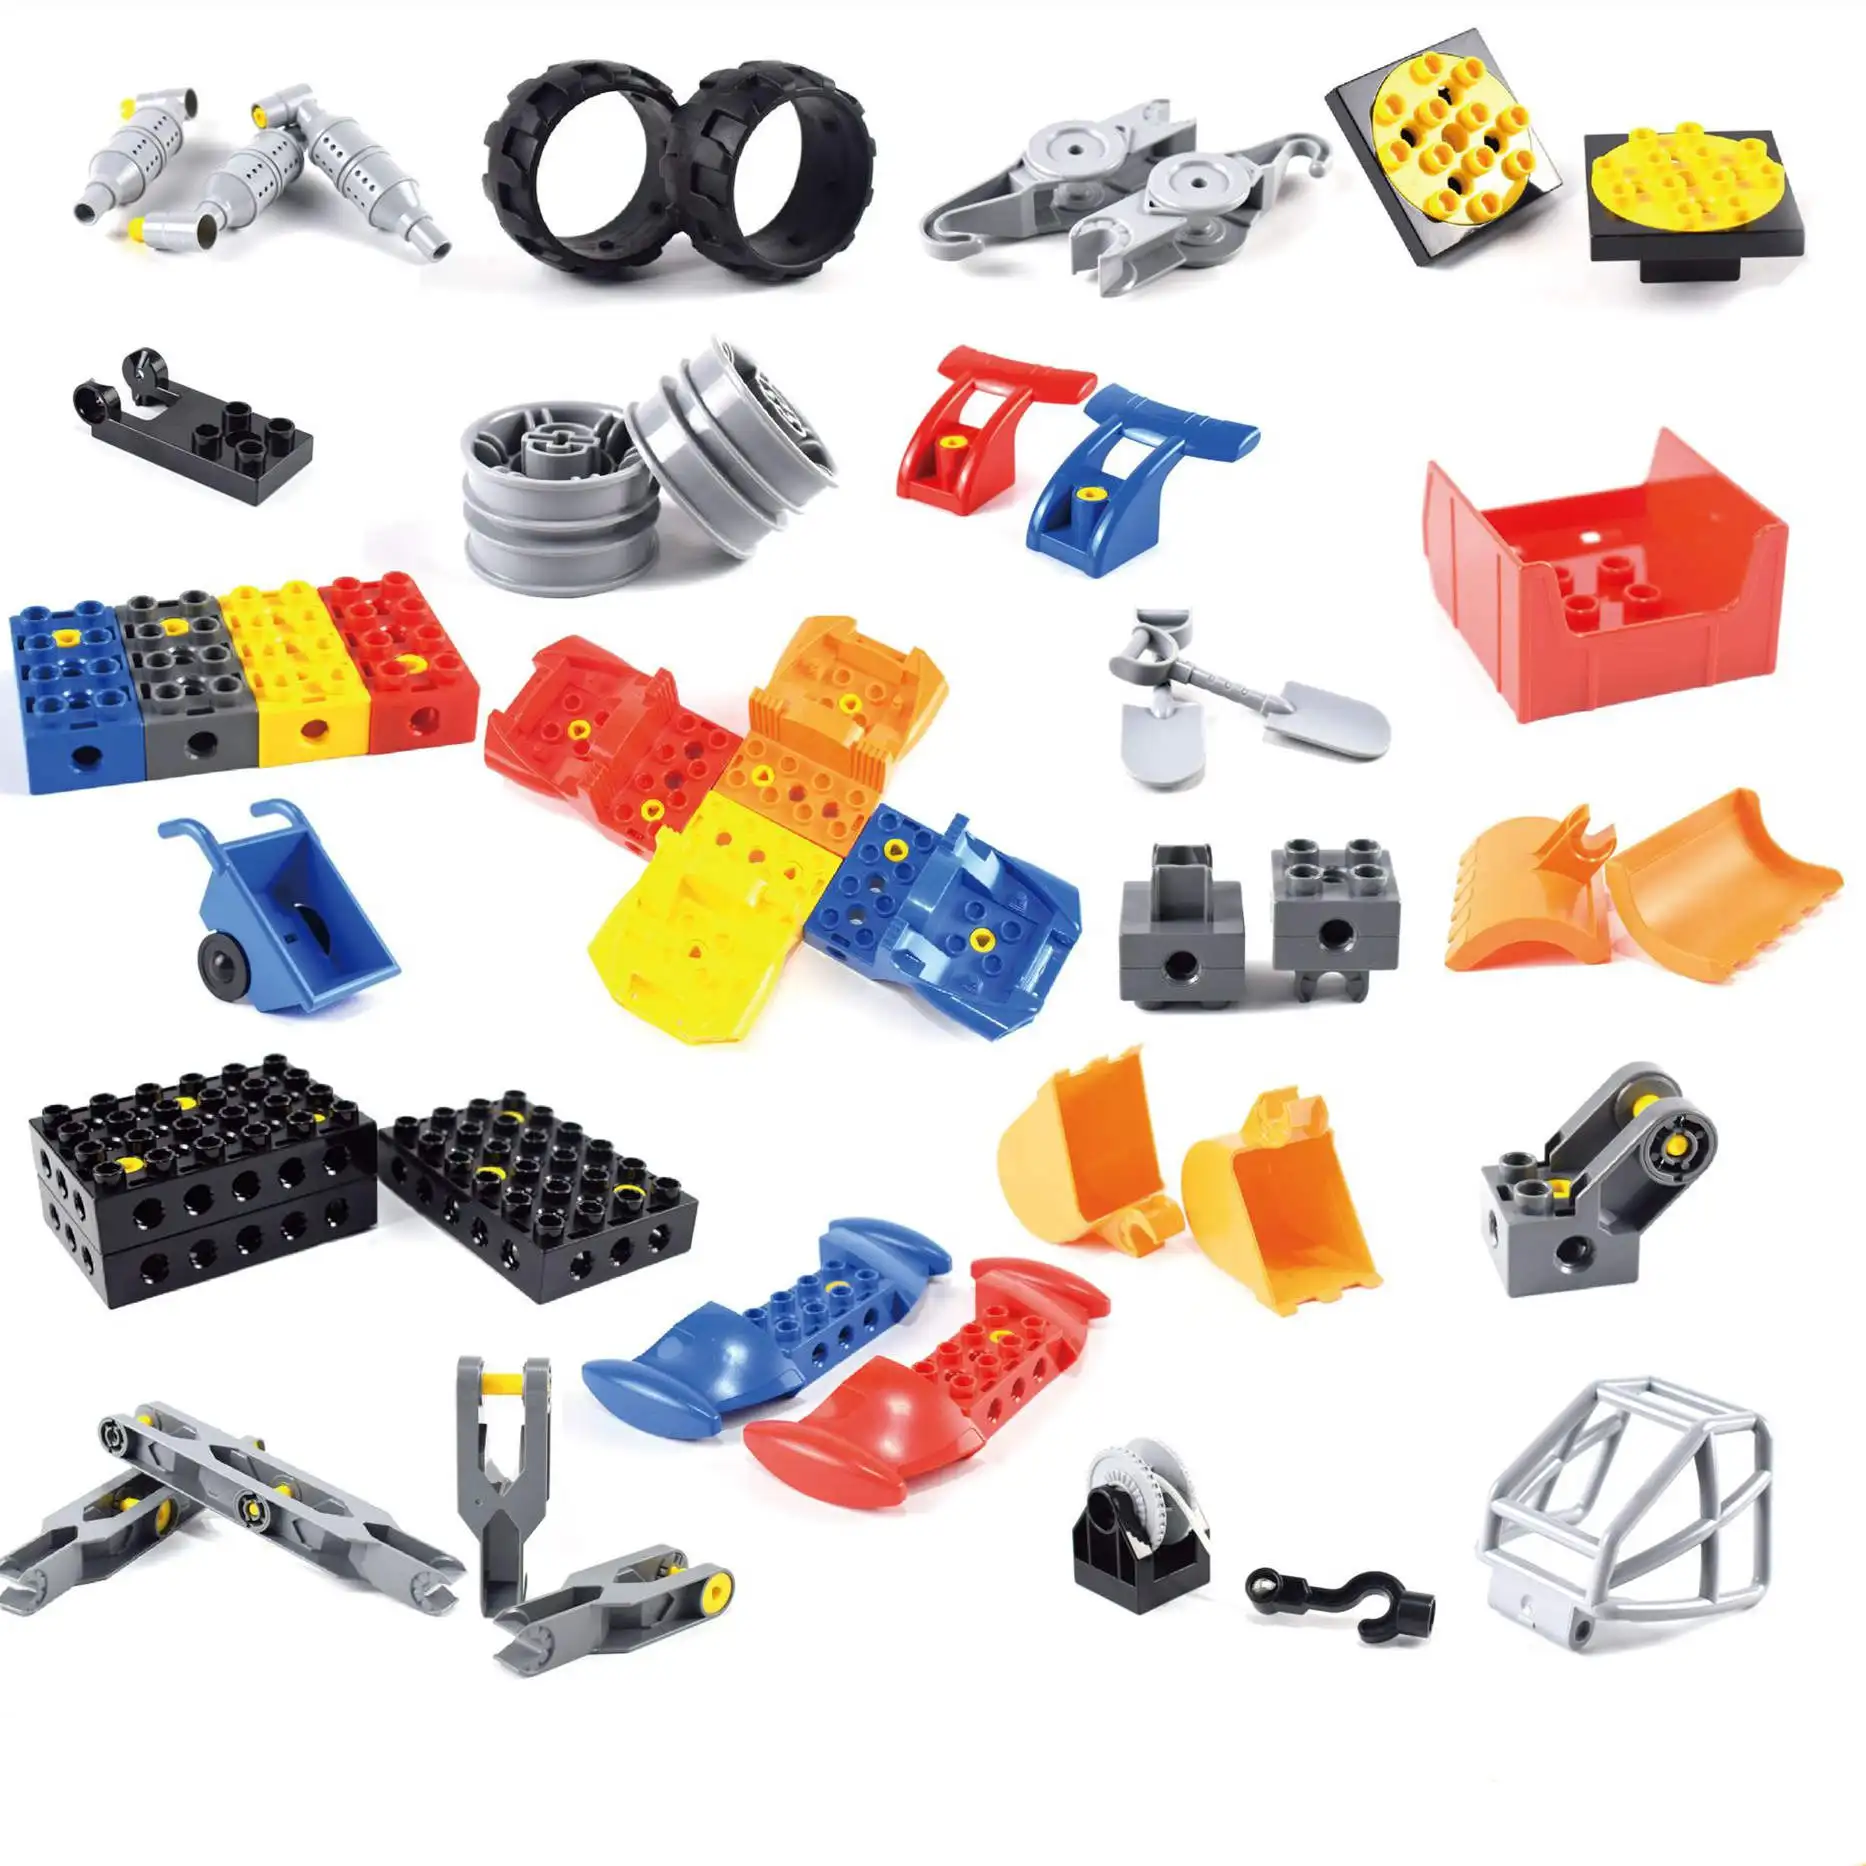 

Детали механической техники, конструктор из крупных частиц, сборные игрушки, 45002 деталей, совместимы с Lego Duplo